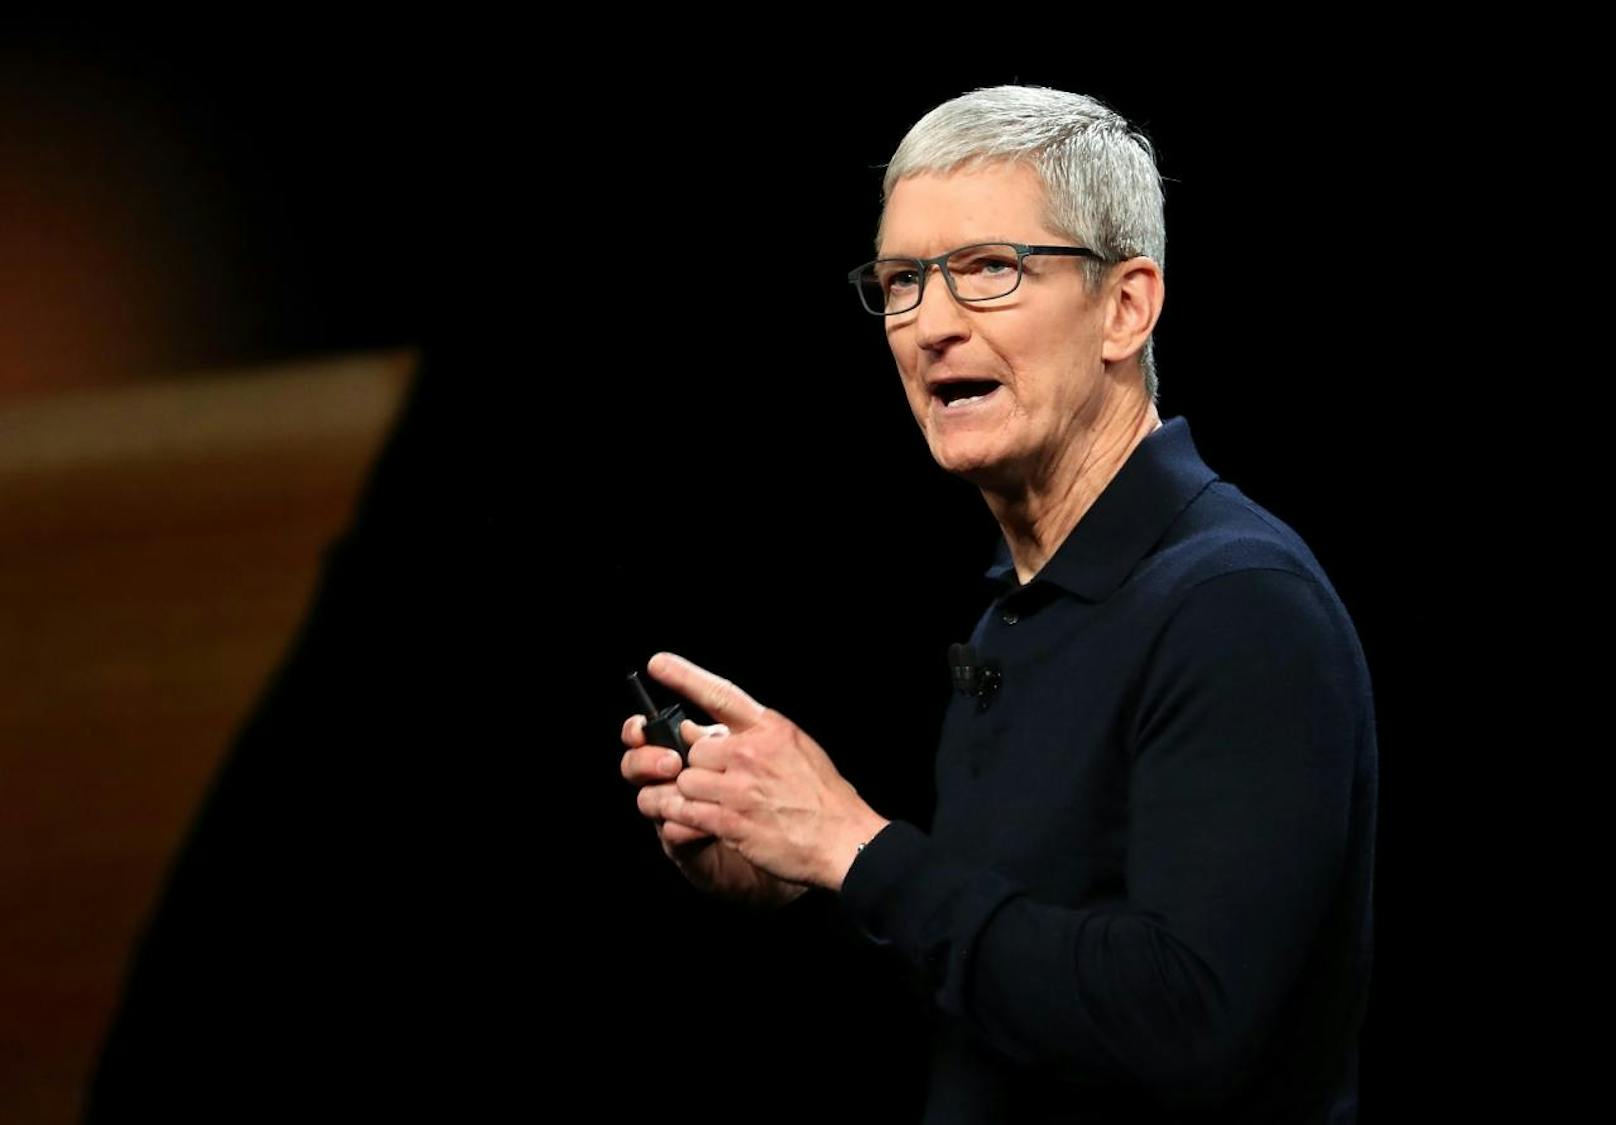 Am 19. Oktober äußerte sich Apple-CEO Tim Cook erstmals persönlich: "Wir haben alles auf den Kopf gestellt und forensisch untersucht und kommen zum Schluss: Das ist nicht passiert. Das ist nicht wahr", sagte Cook in einem Interview mit "Buzzfeed.com".